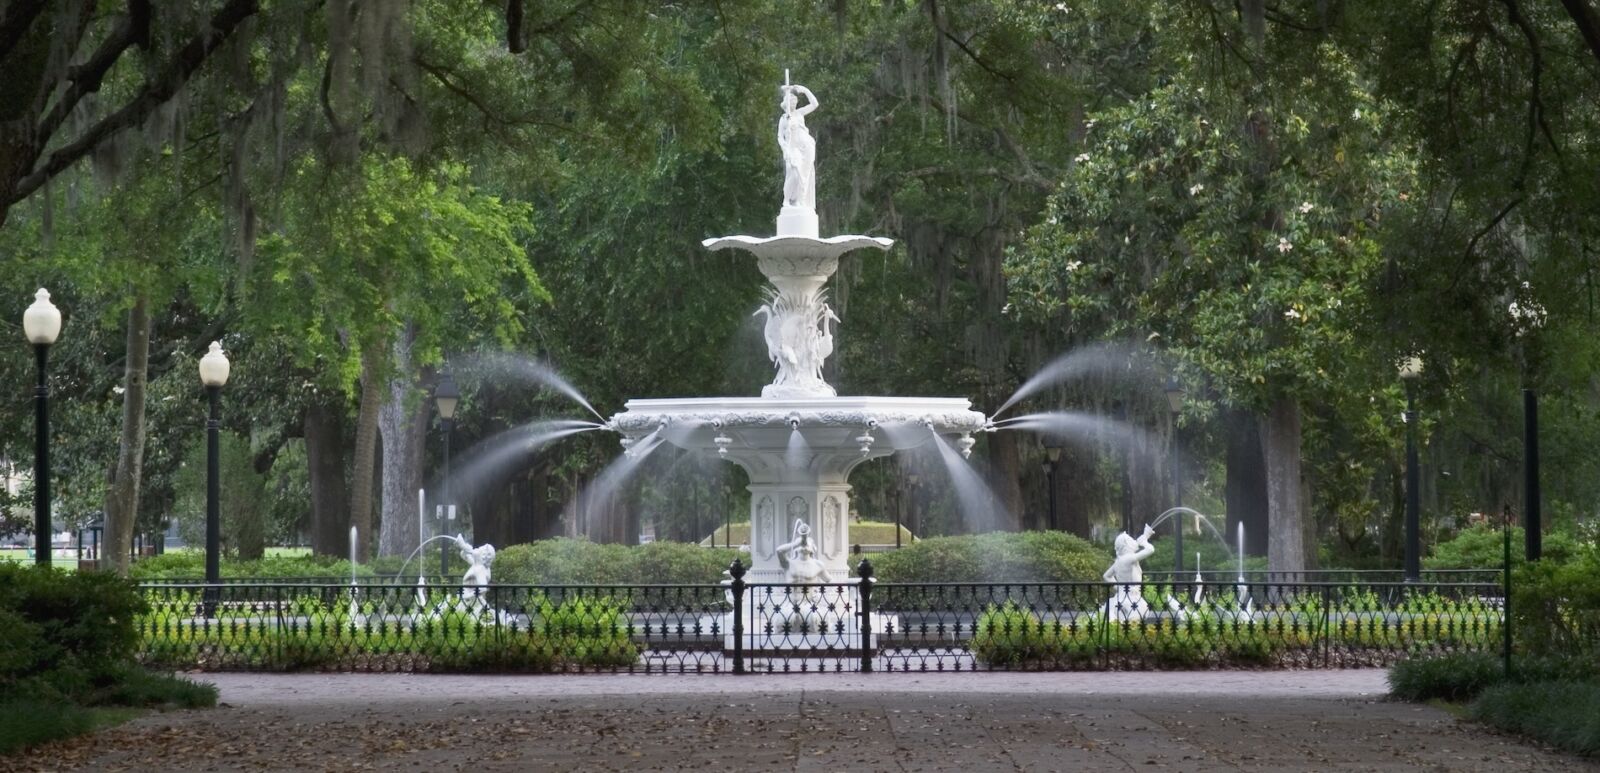 Forsyth Park Fountain in Savannah Georgia.